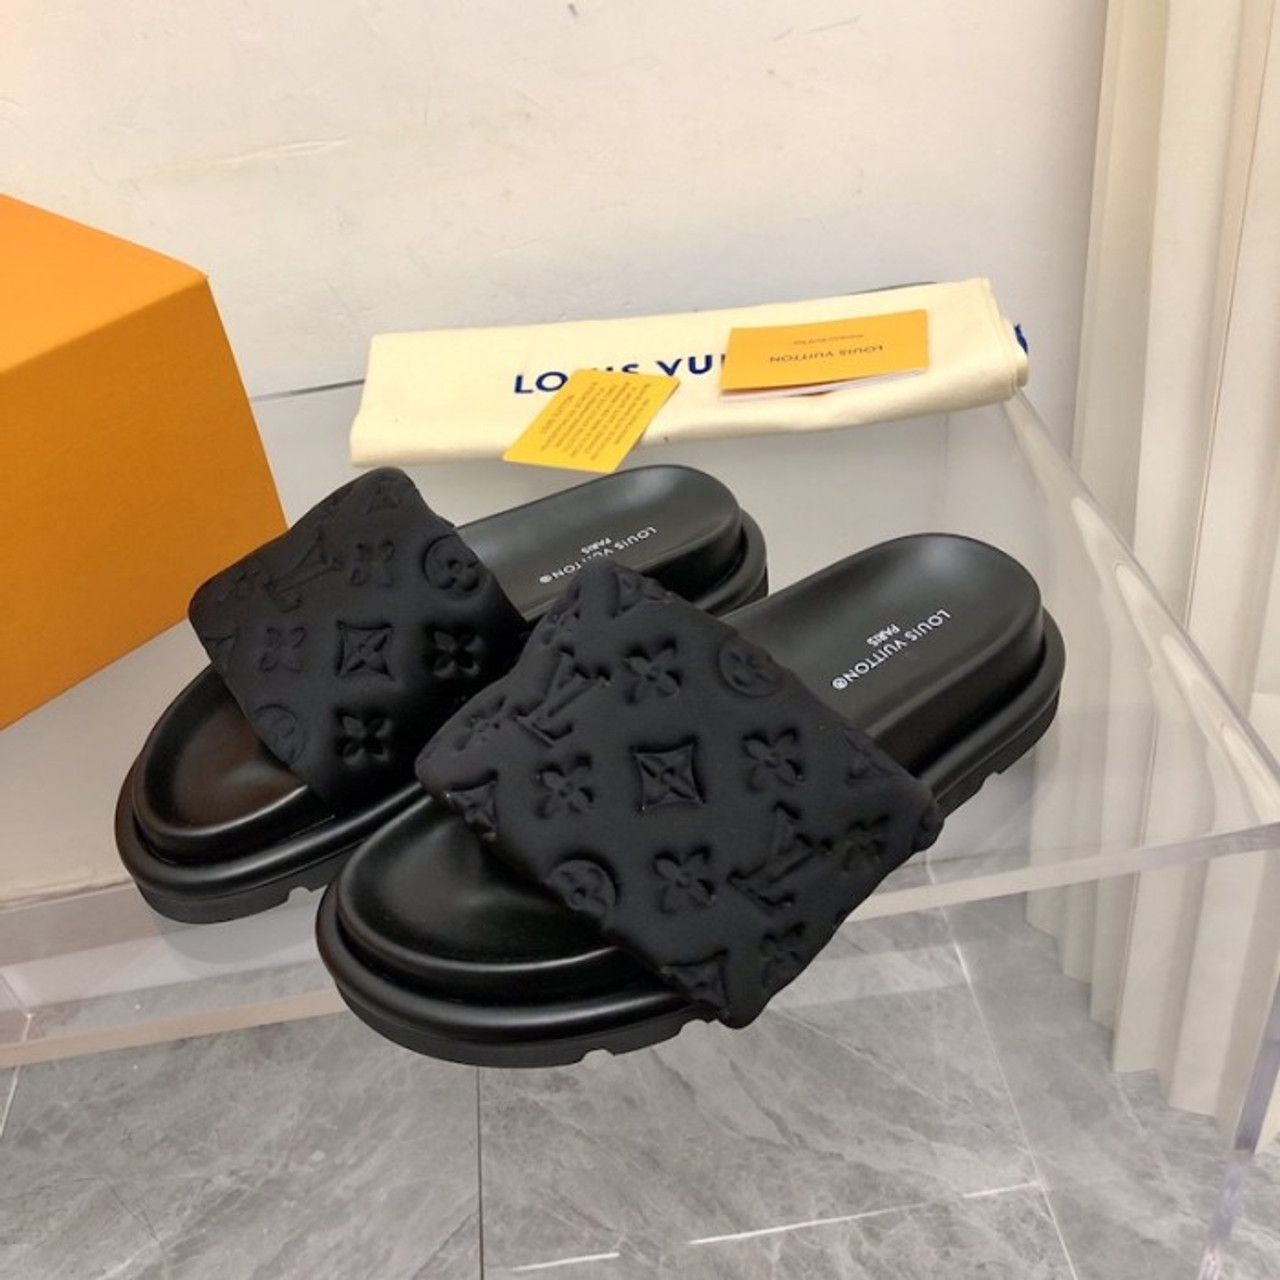 Louis Vuitton sandals - not a sucker! UNFrayer